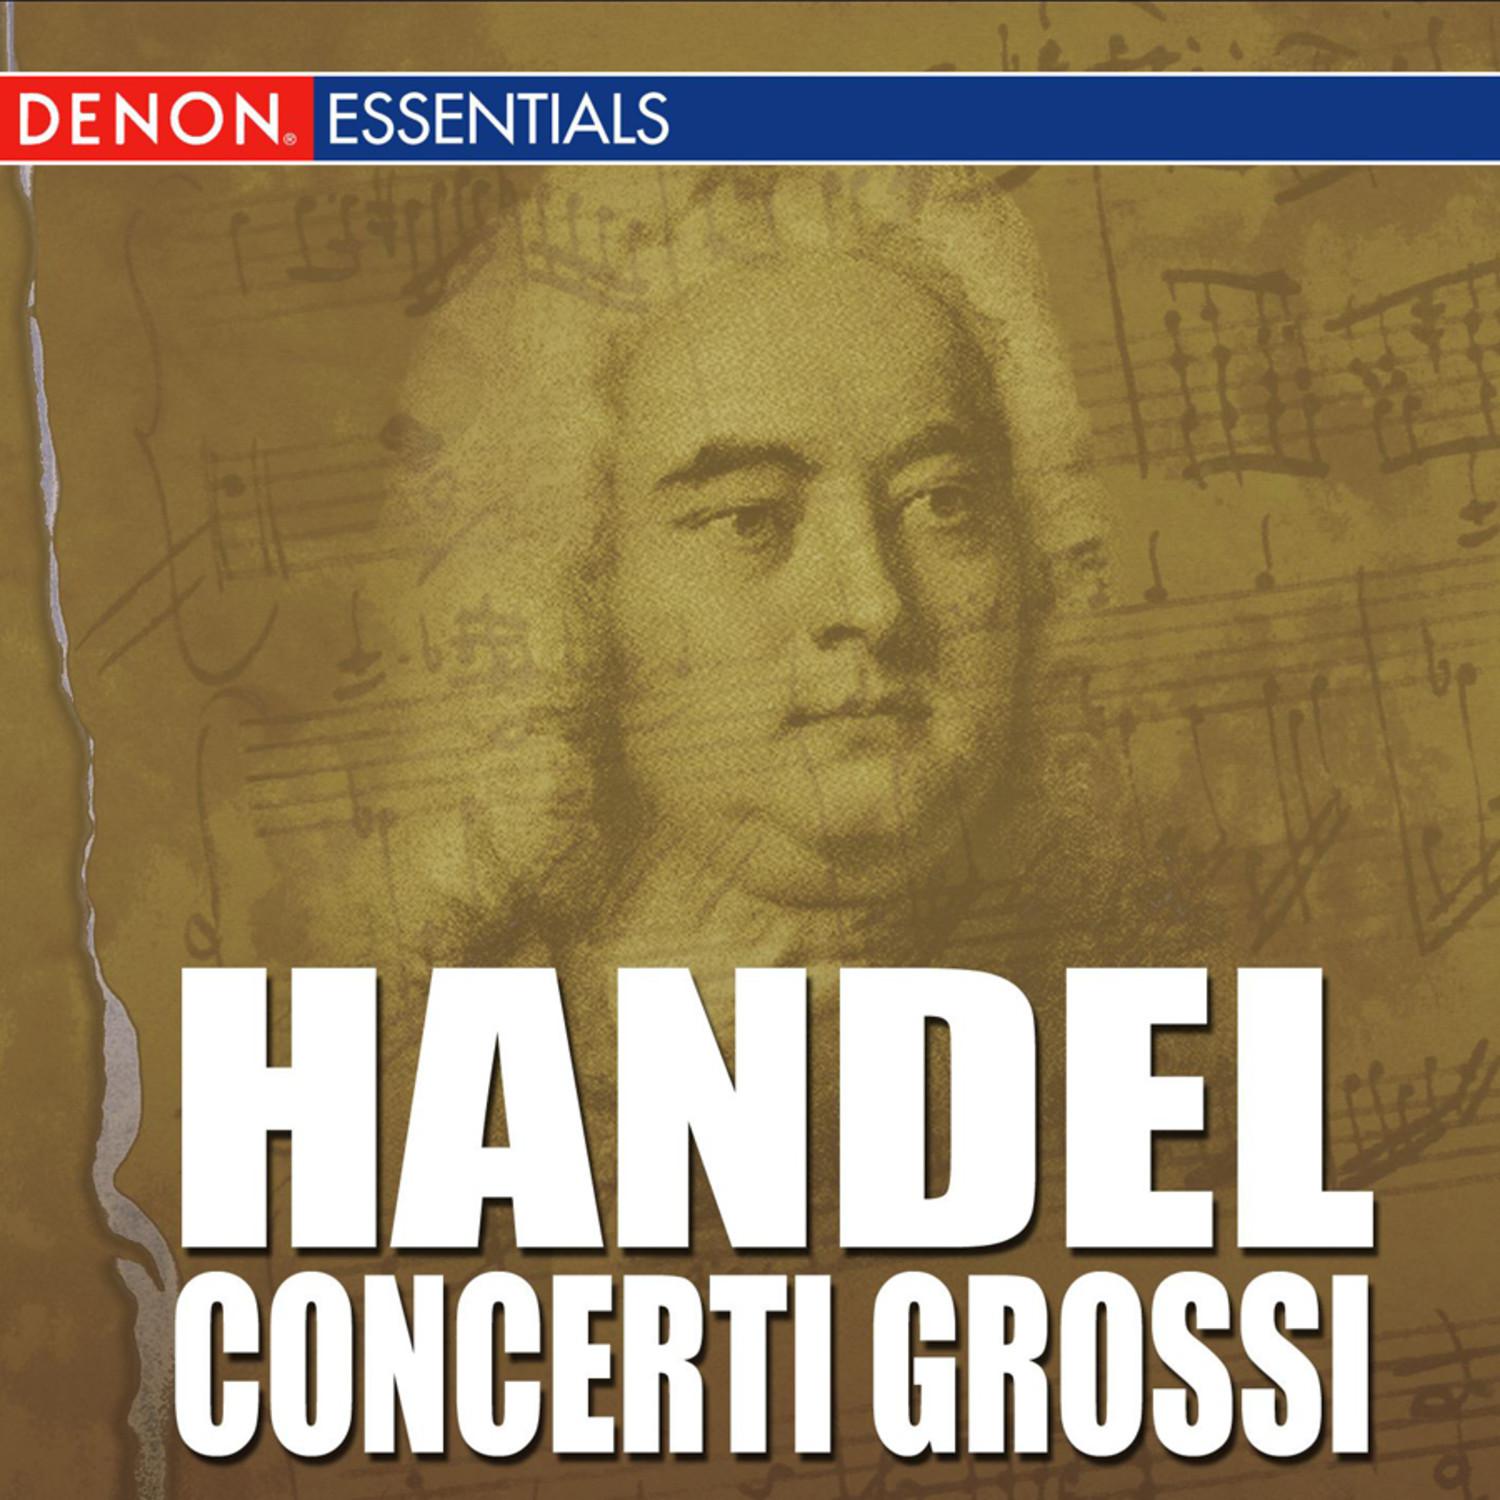 Concerto Grosso, Op. 6: No. 10 in D Minor, HWV 328: III. Lento